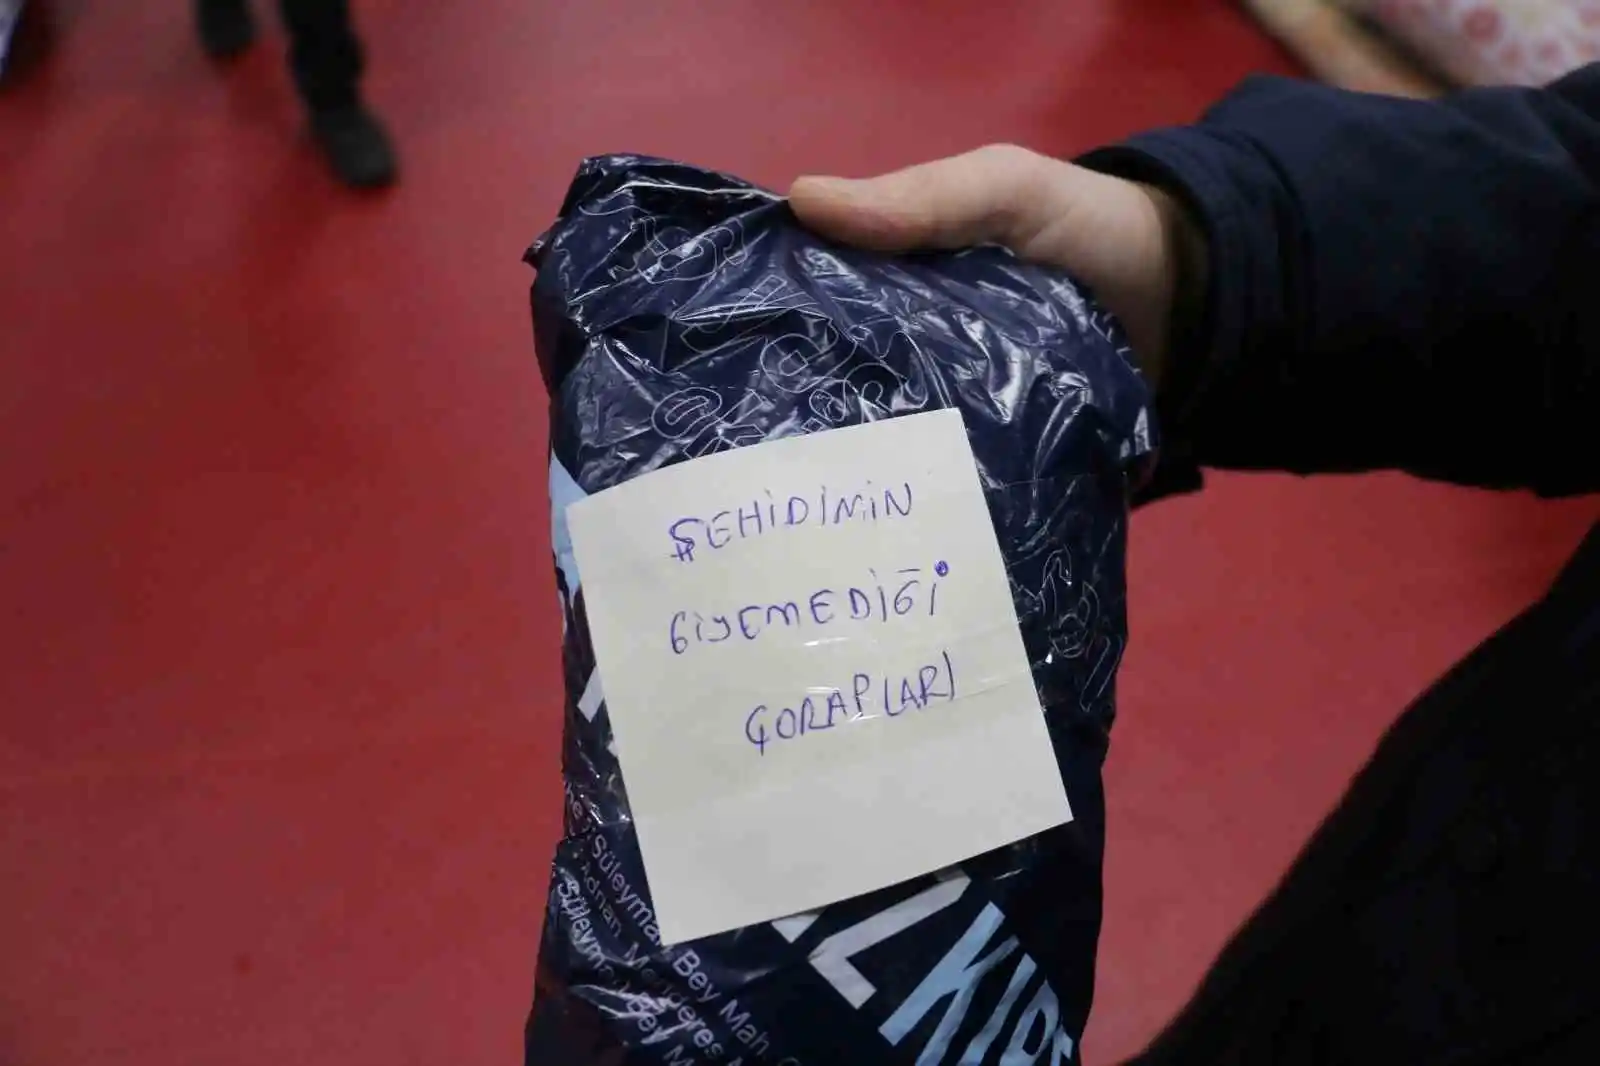 Deprem yardım kampanyasında Yalova'dan duygulandıran notlar: "Şehidimin giyemediği çorapları"
